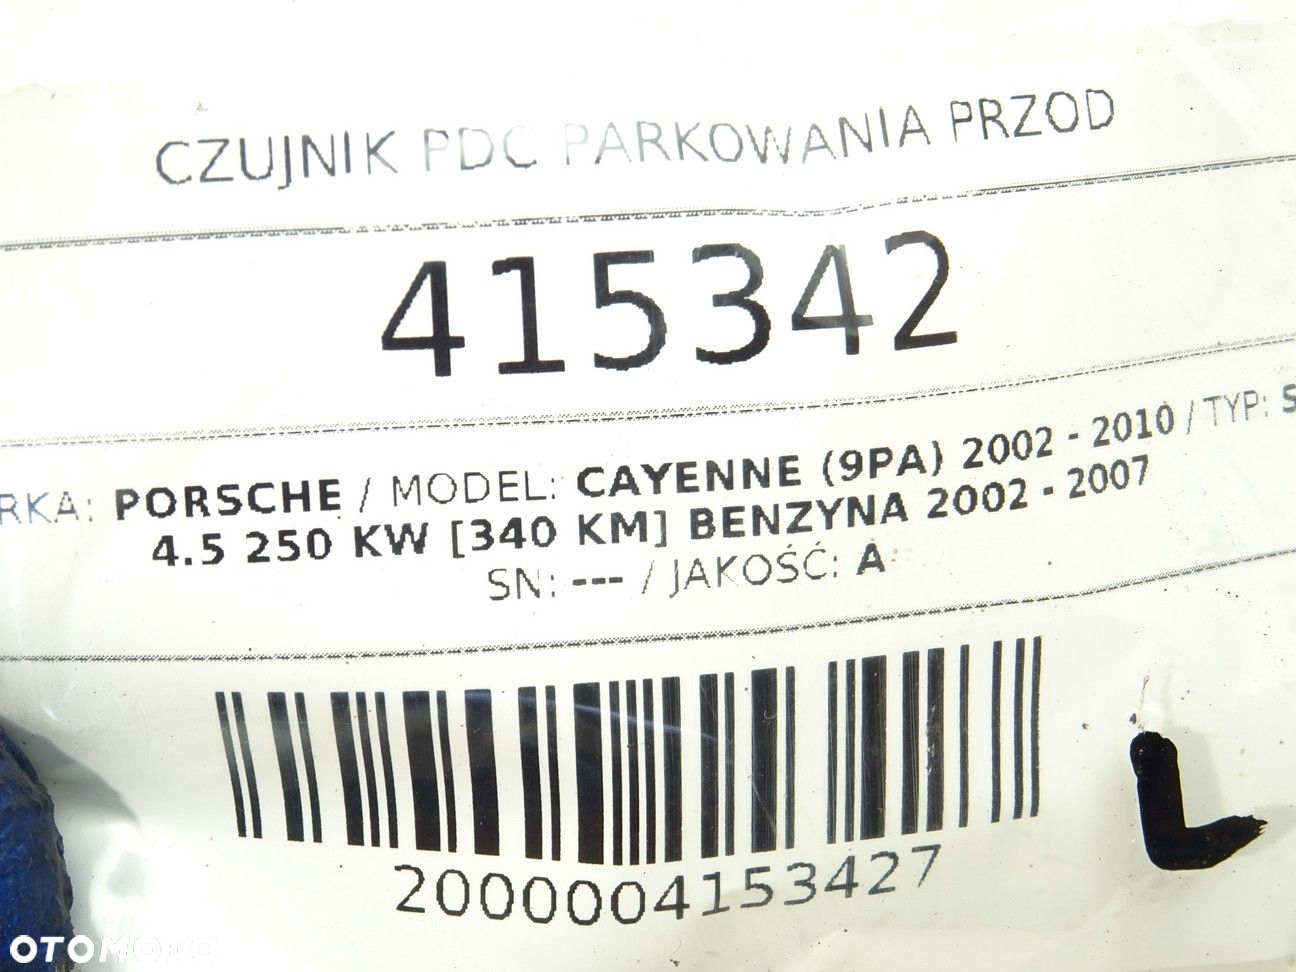 CZUJNIK PDC PARKOWANIA PRZÓD PORSCHE CAYENNE (9PA) 2002 - 2010 S 4.5 250 kW [340 KM] benzyna 2002 - - 4